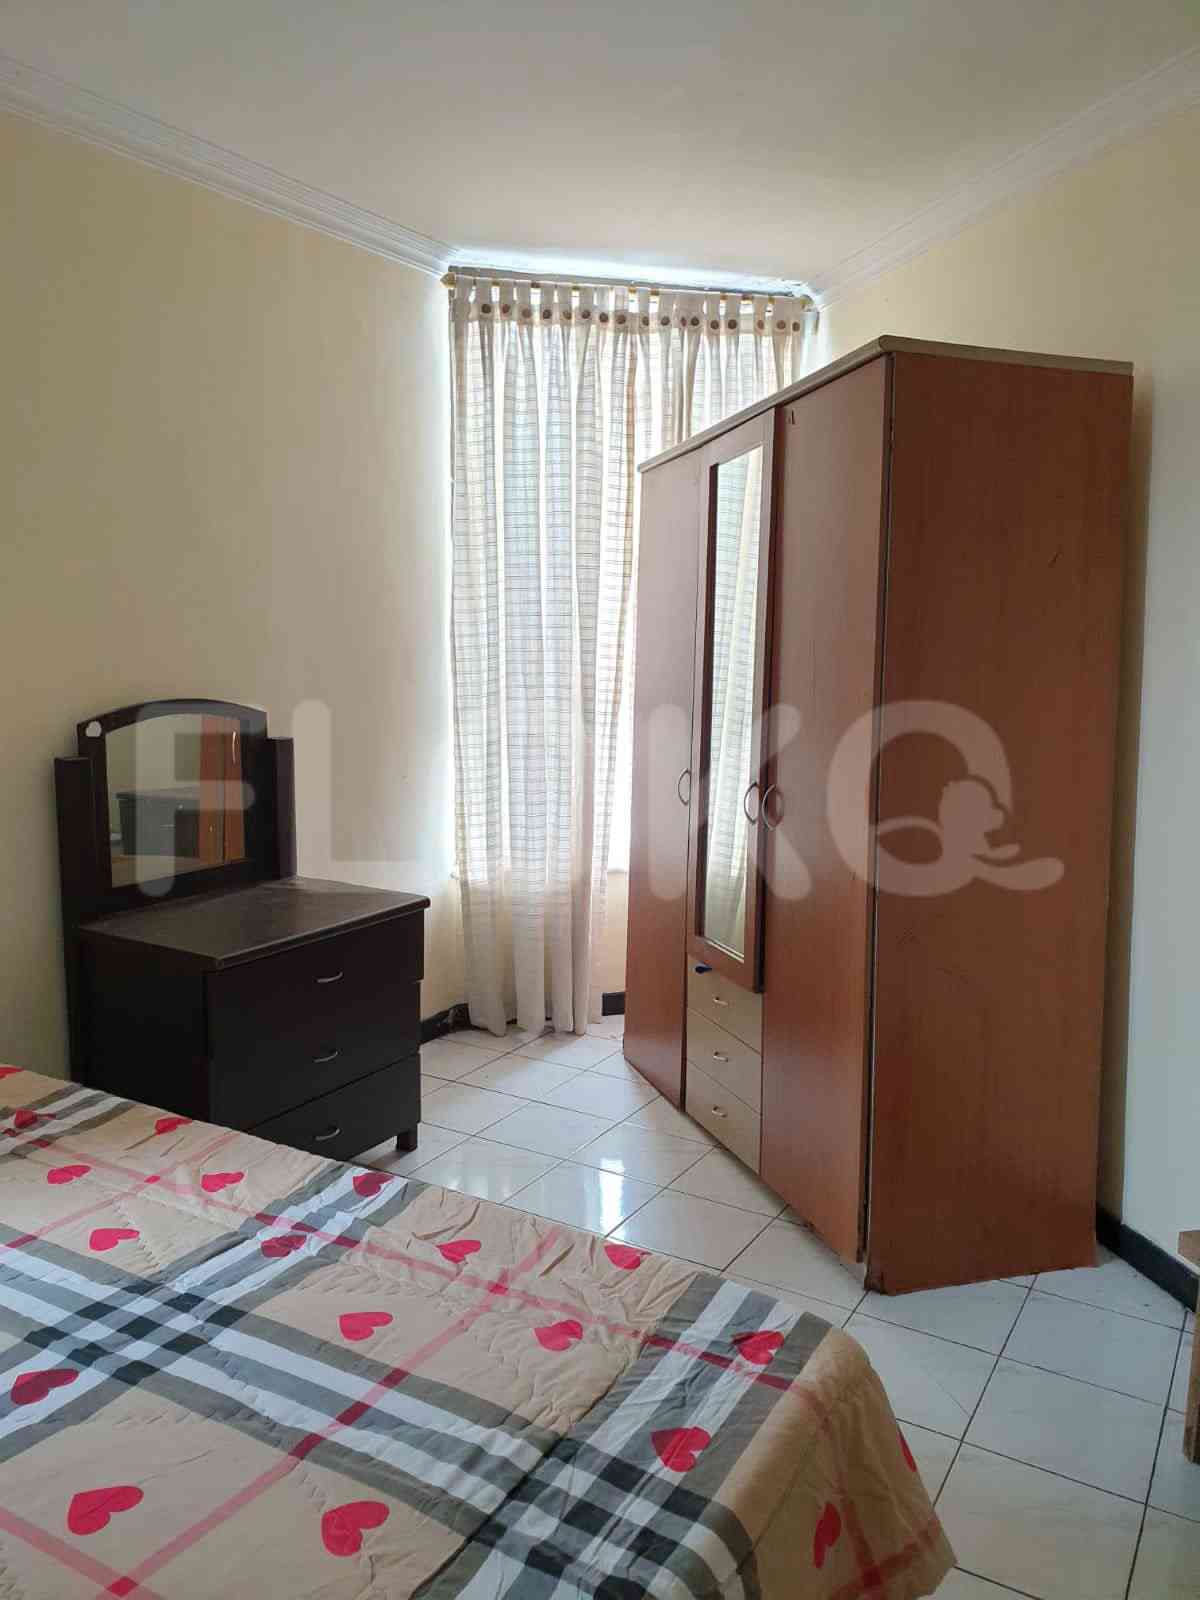 1 Bedroom on 33rd Floor for Rent in Taman Rasuna Apartment - fku5ee 1